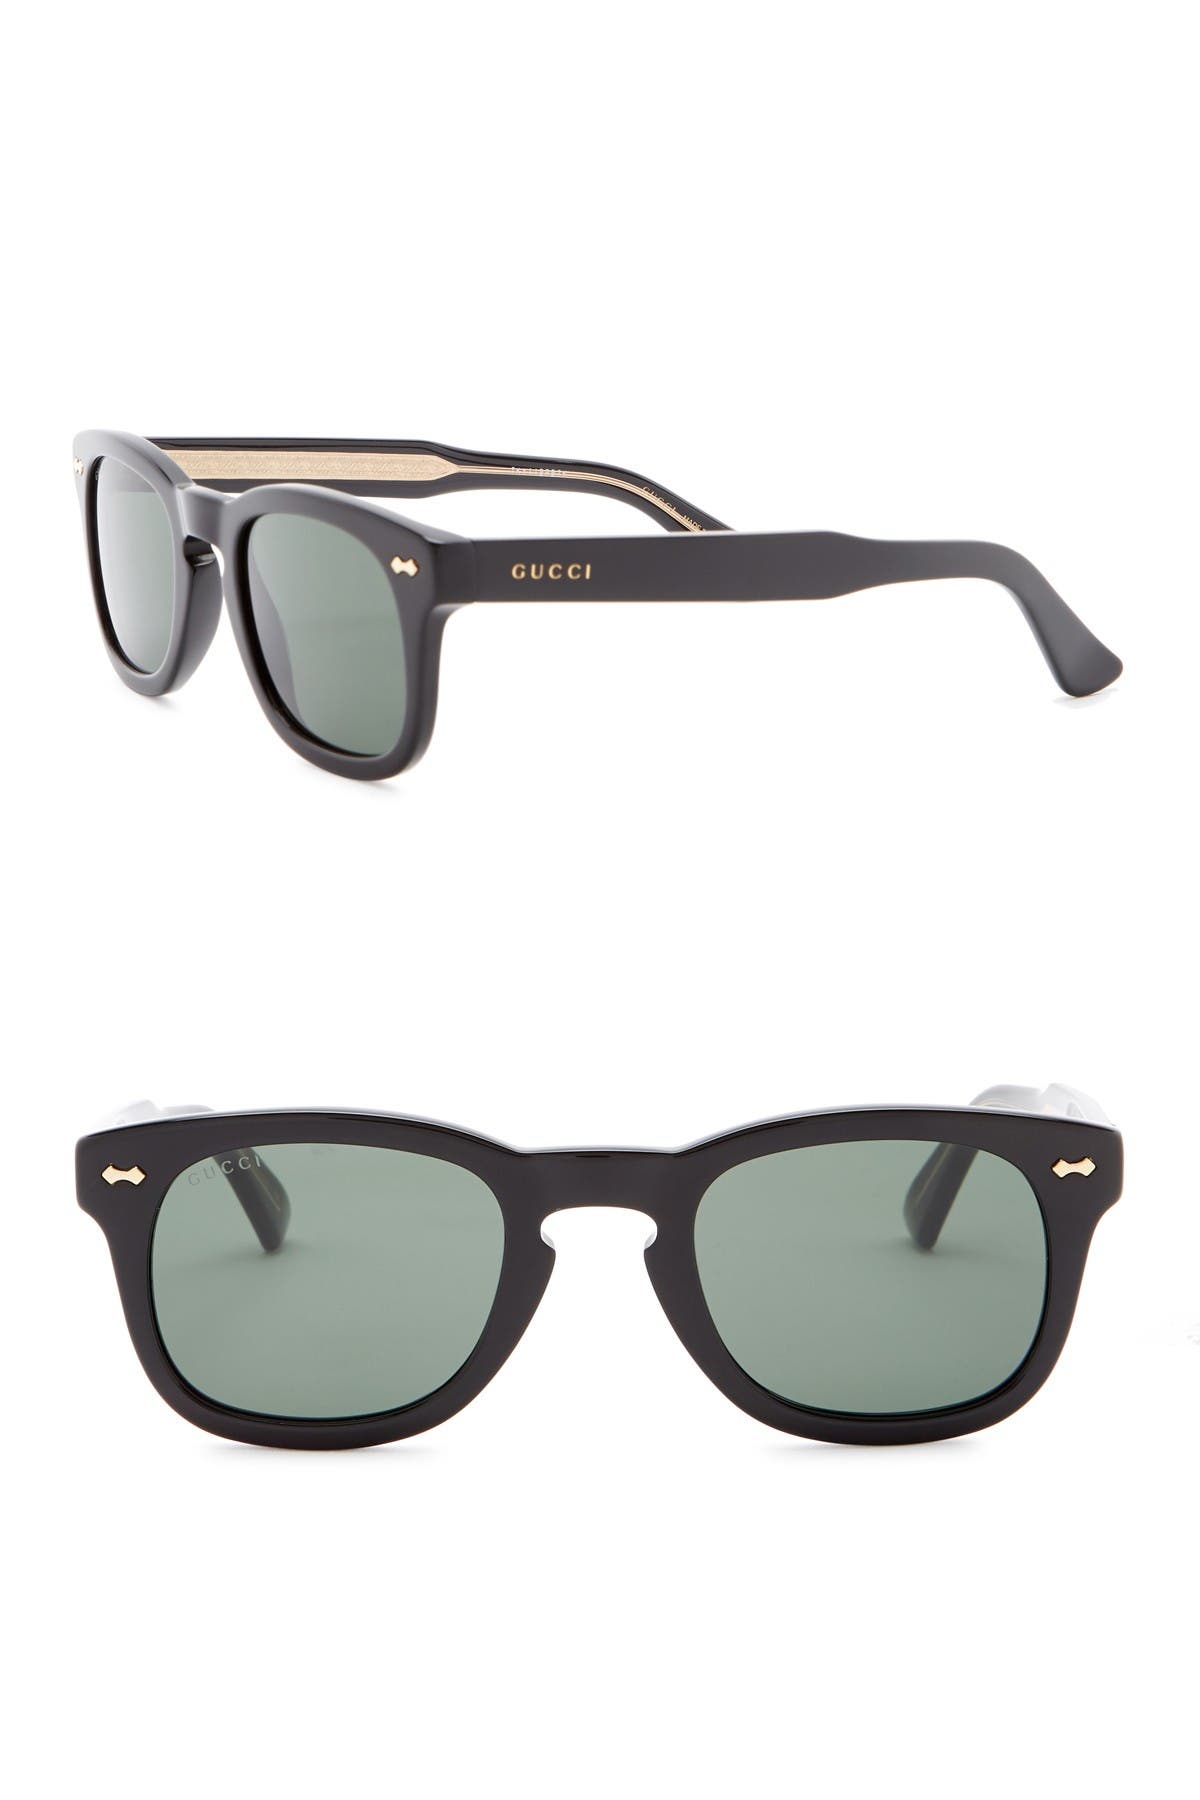 gucci 49mm square sunglasses